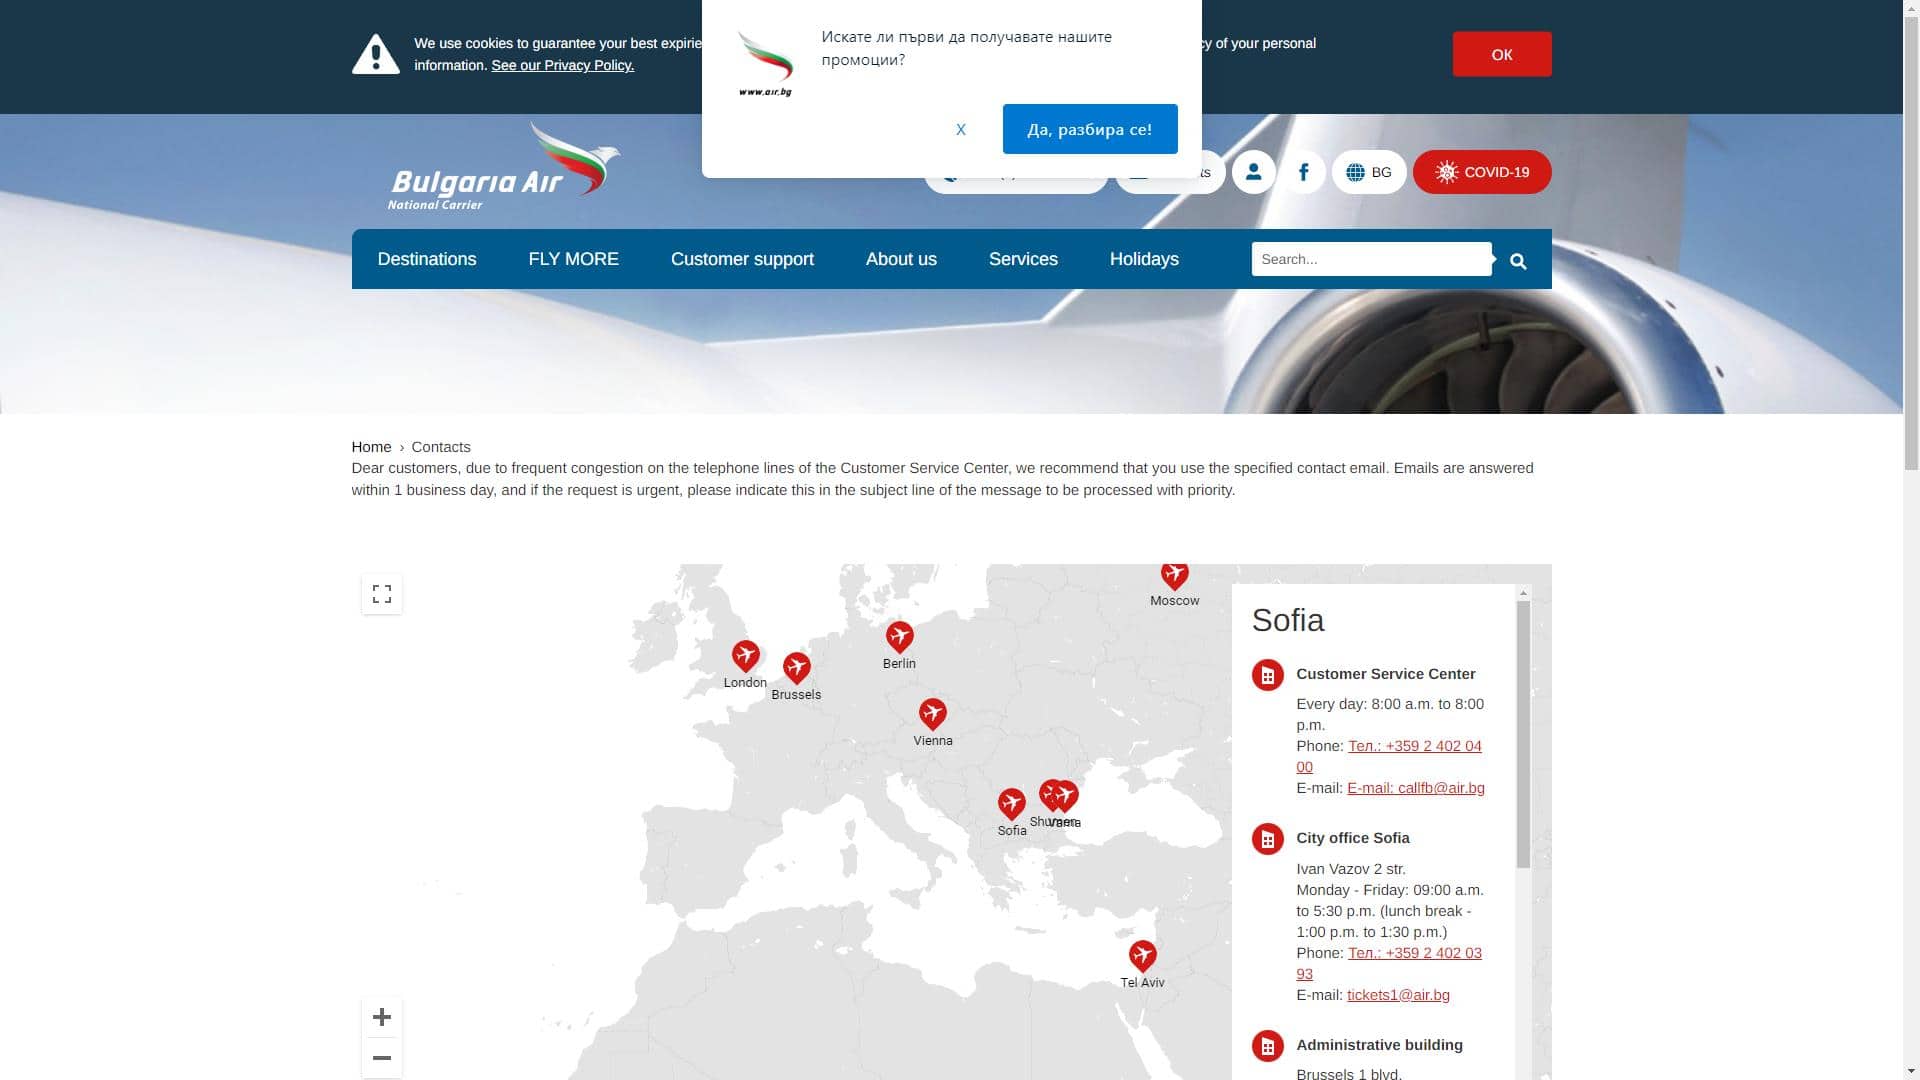 בולגריה אייר Bulgaria Air טופס יצירת קשר צילום מסך